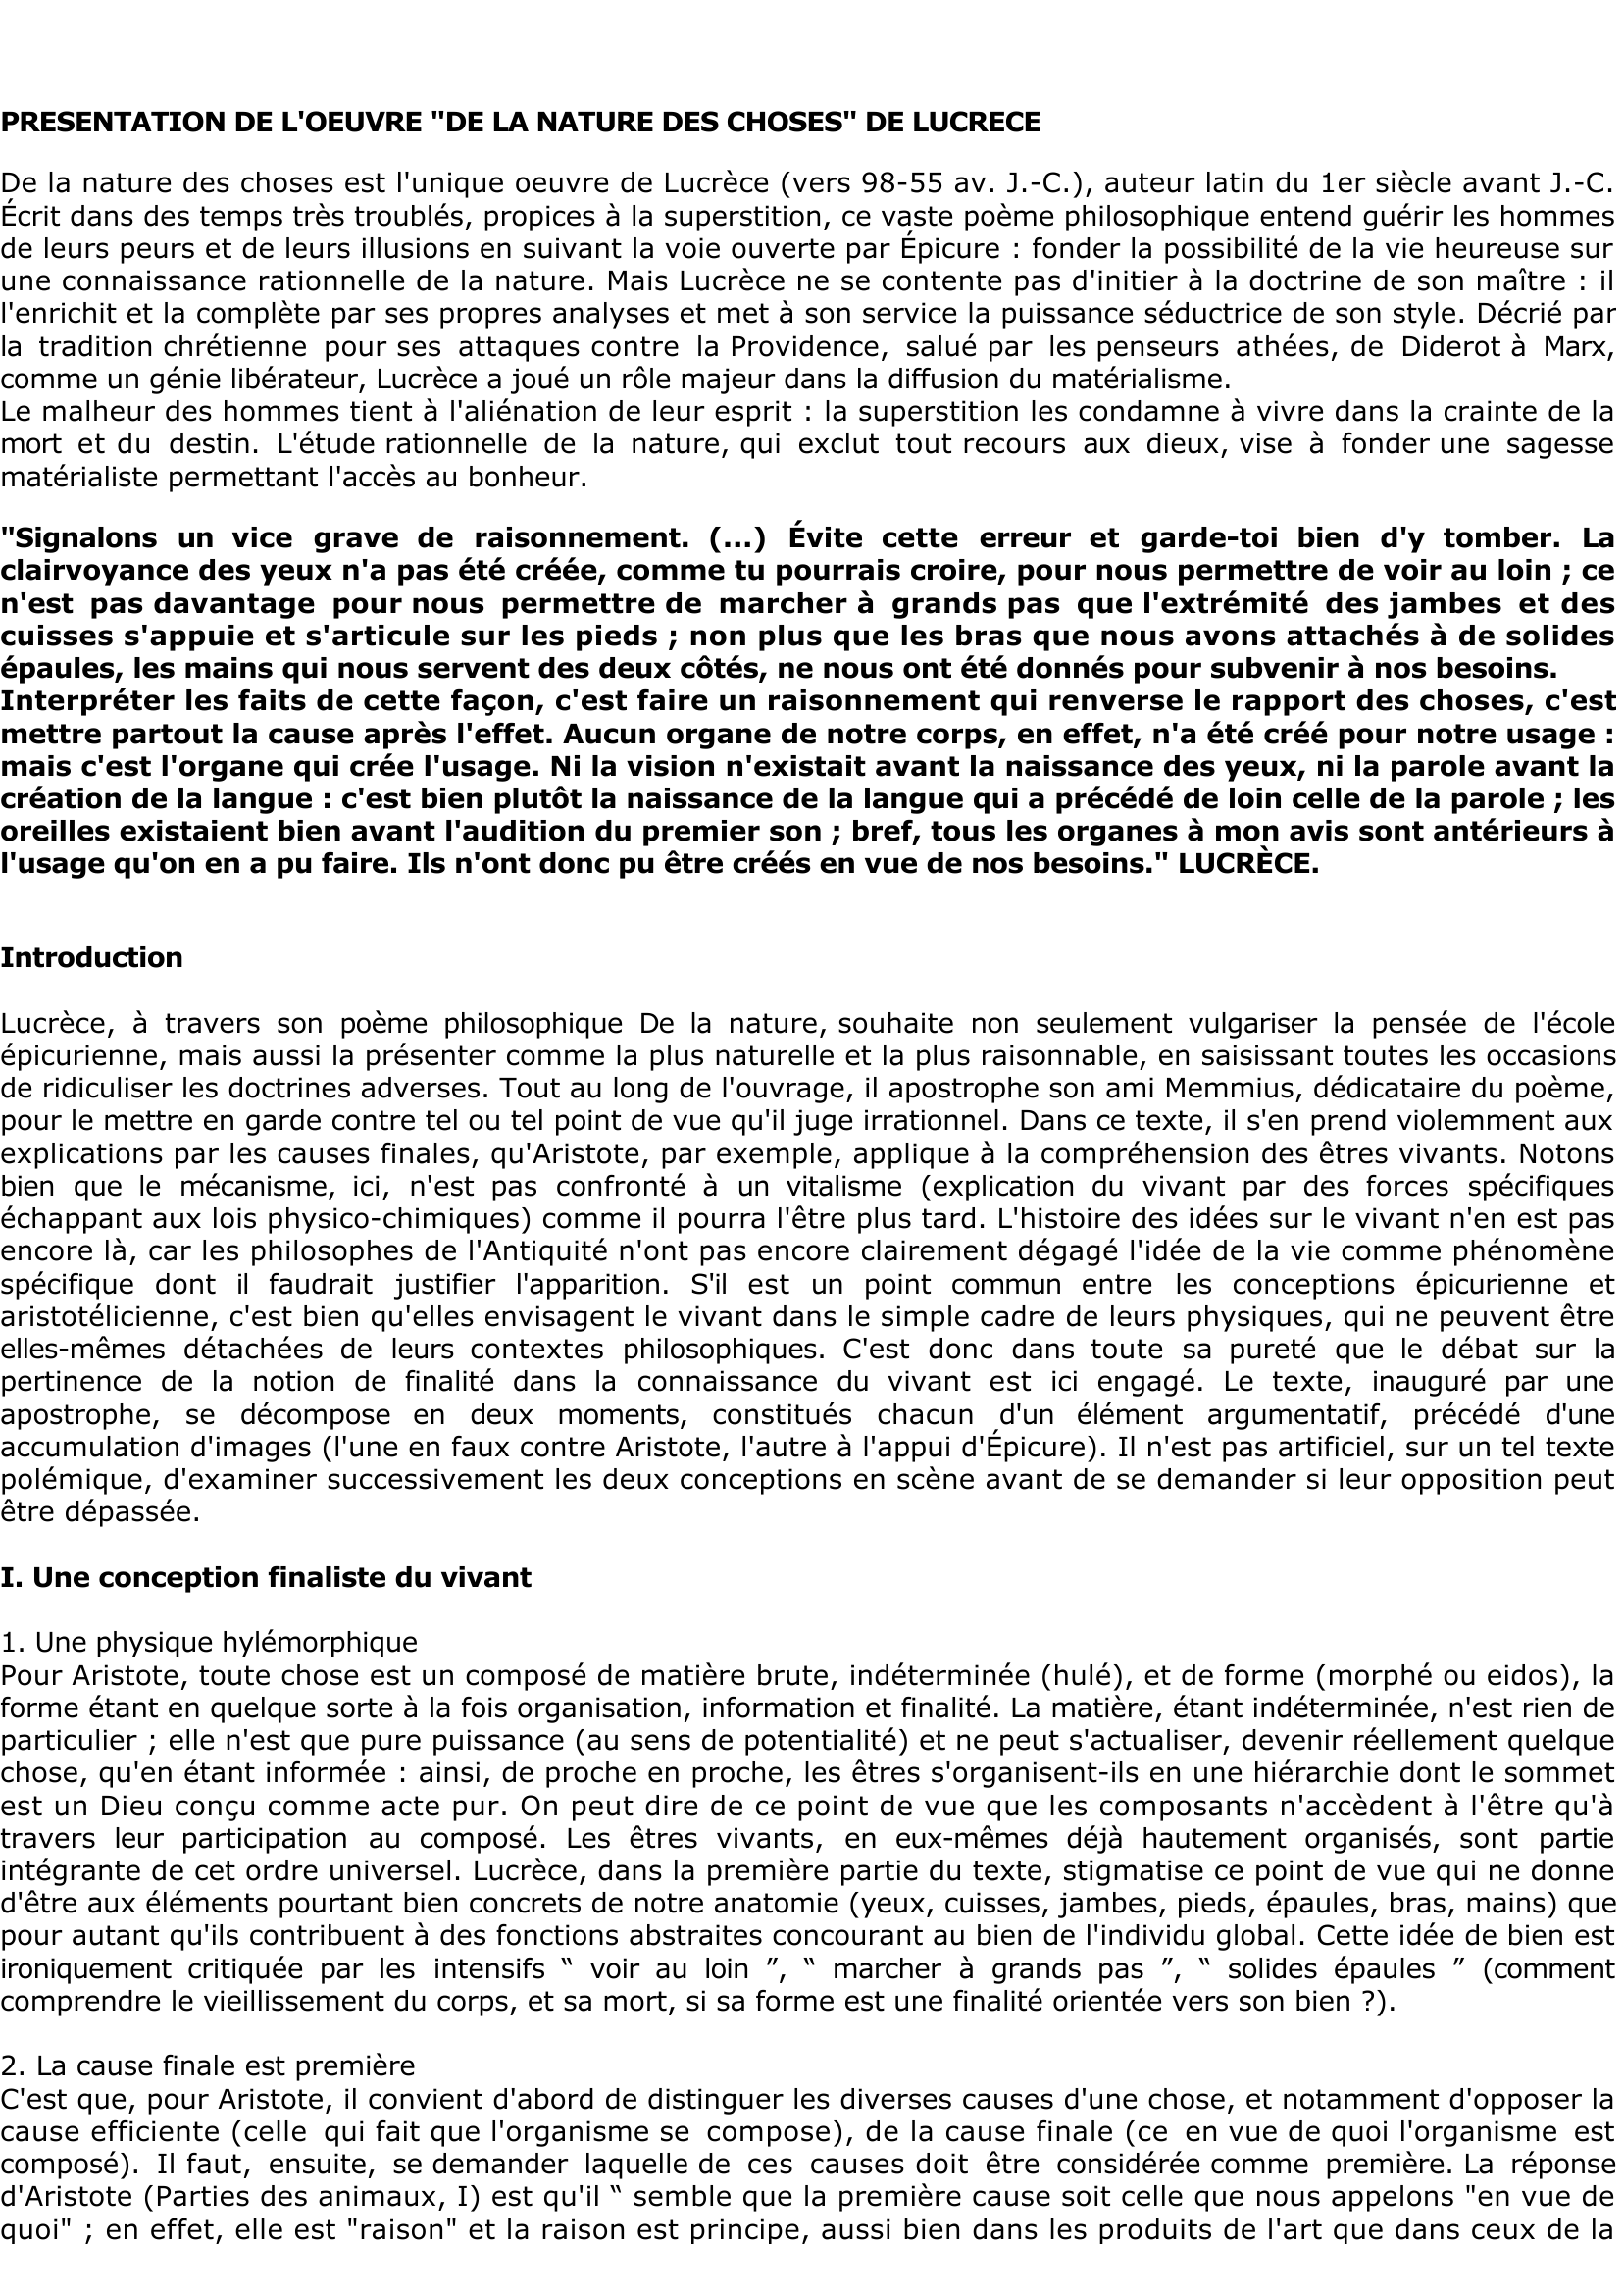 Prévisualisation du document PRESENTATION DE L'OEUVRE "DE LA NATURE DES CHOSES" DE LUCRECE